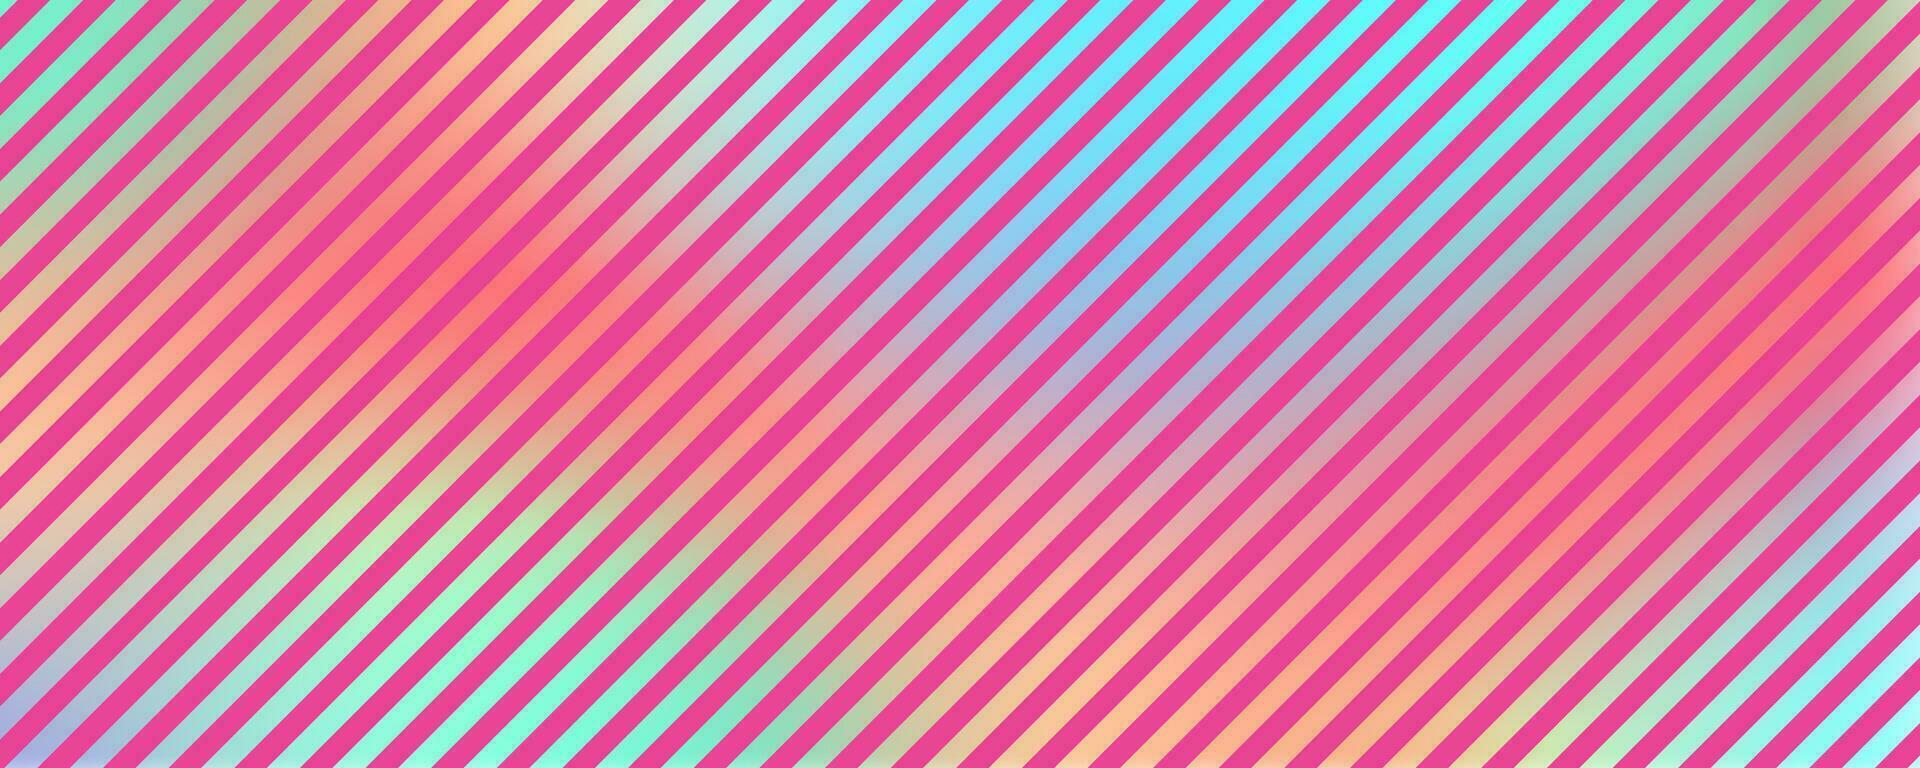 abstract gestreept helling achtergrond. holografische vector folie textuur. regenboog ombre en roze strepen. iriserend elegant illustratie.